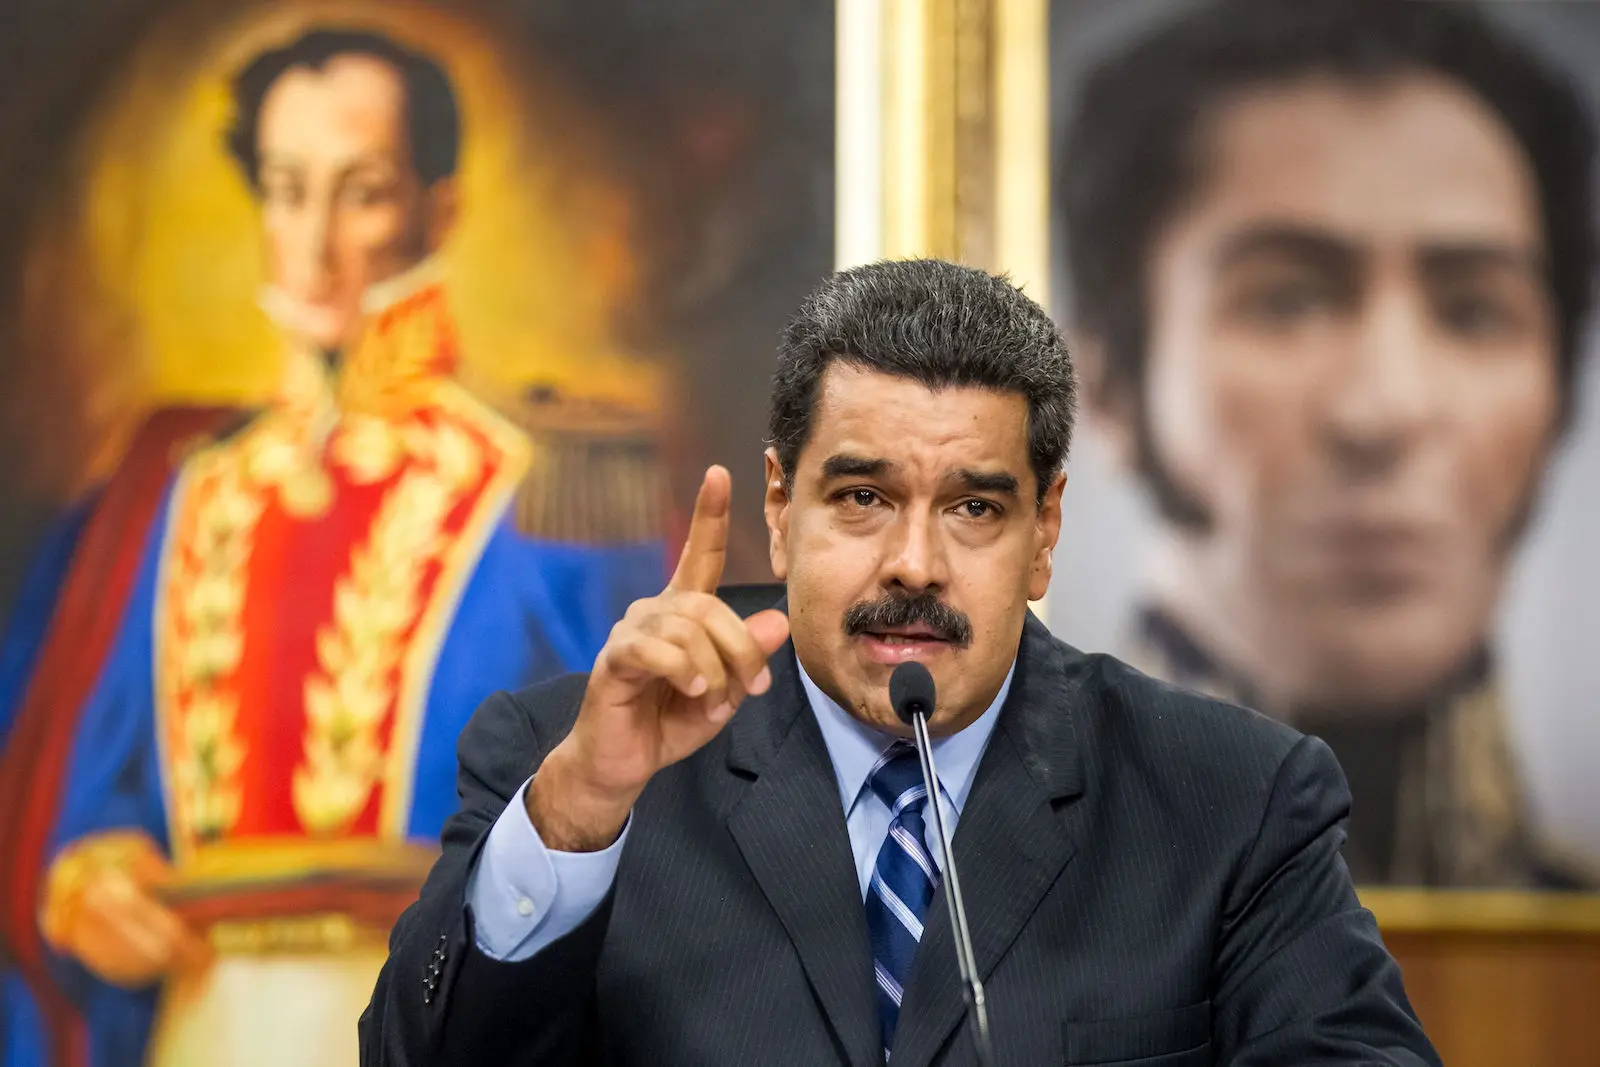 ونزوئلا به دنبال مذاکره مستقیم با آمریکا و دریافت تضمین است